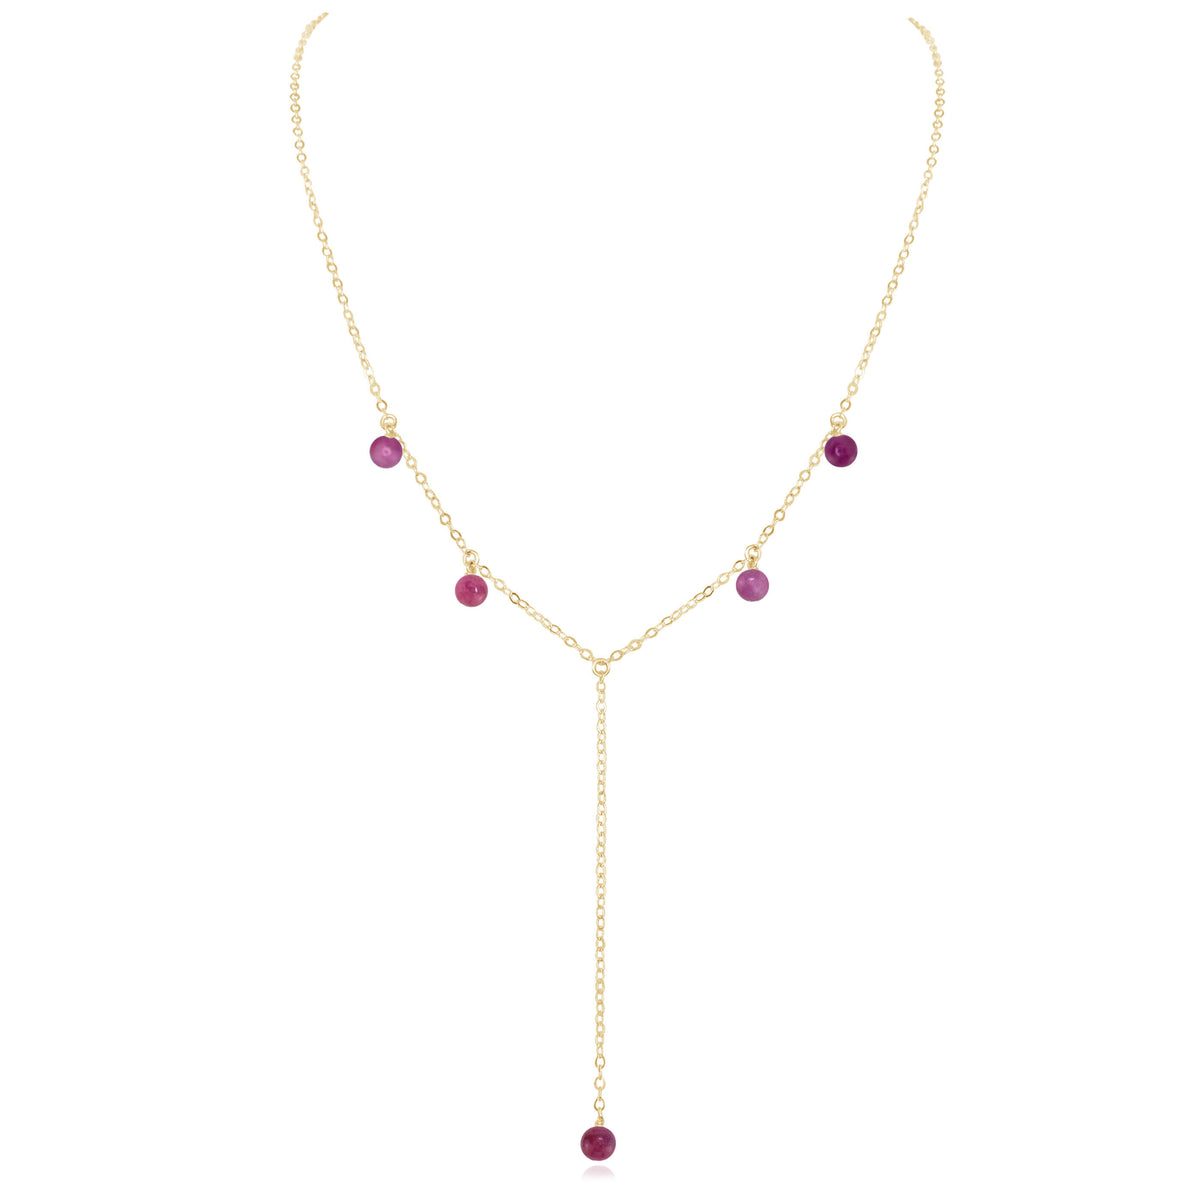 Boho Y Necklace - Ruby - 14K Gold Fill - Luna Tide Handmade Jewellery